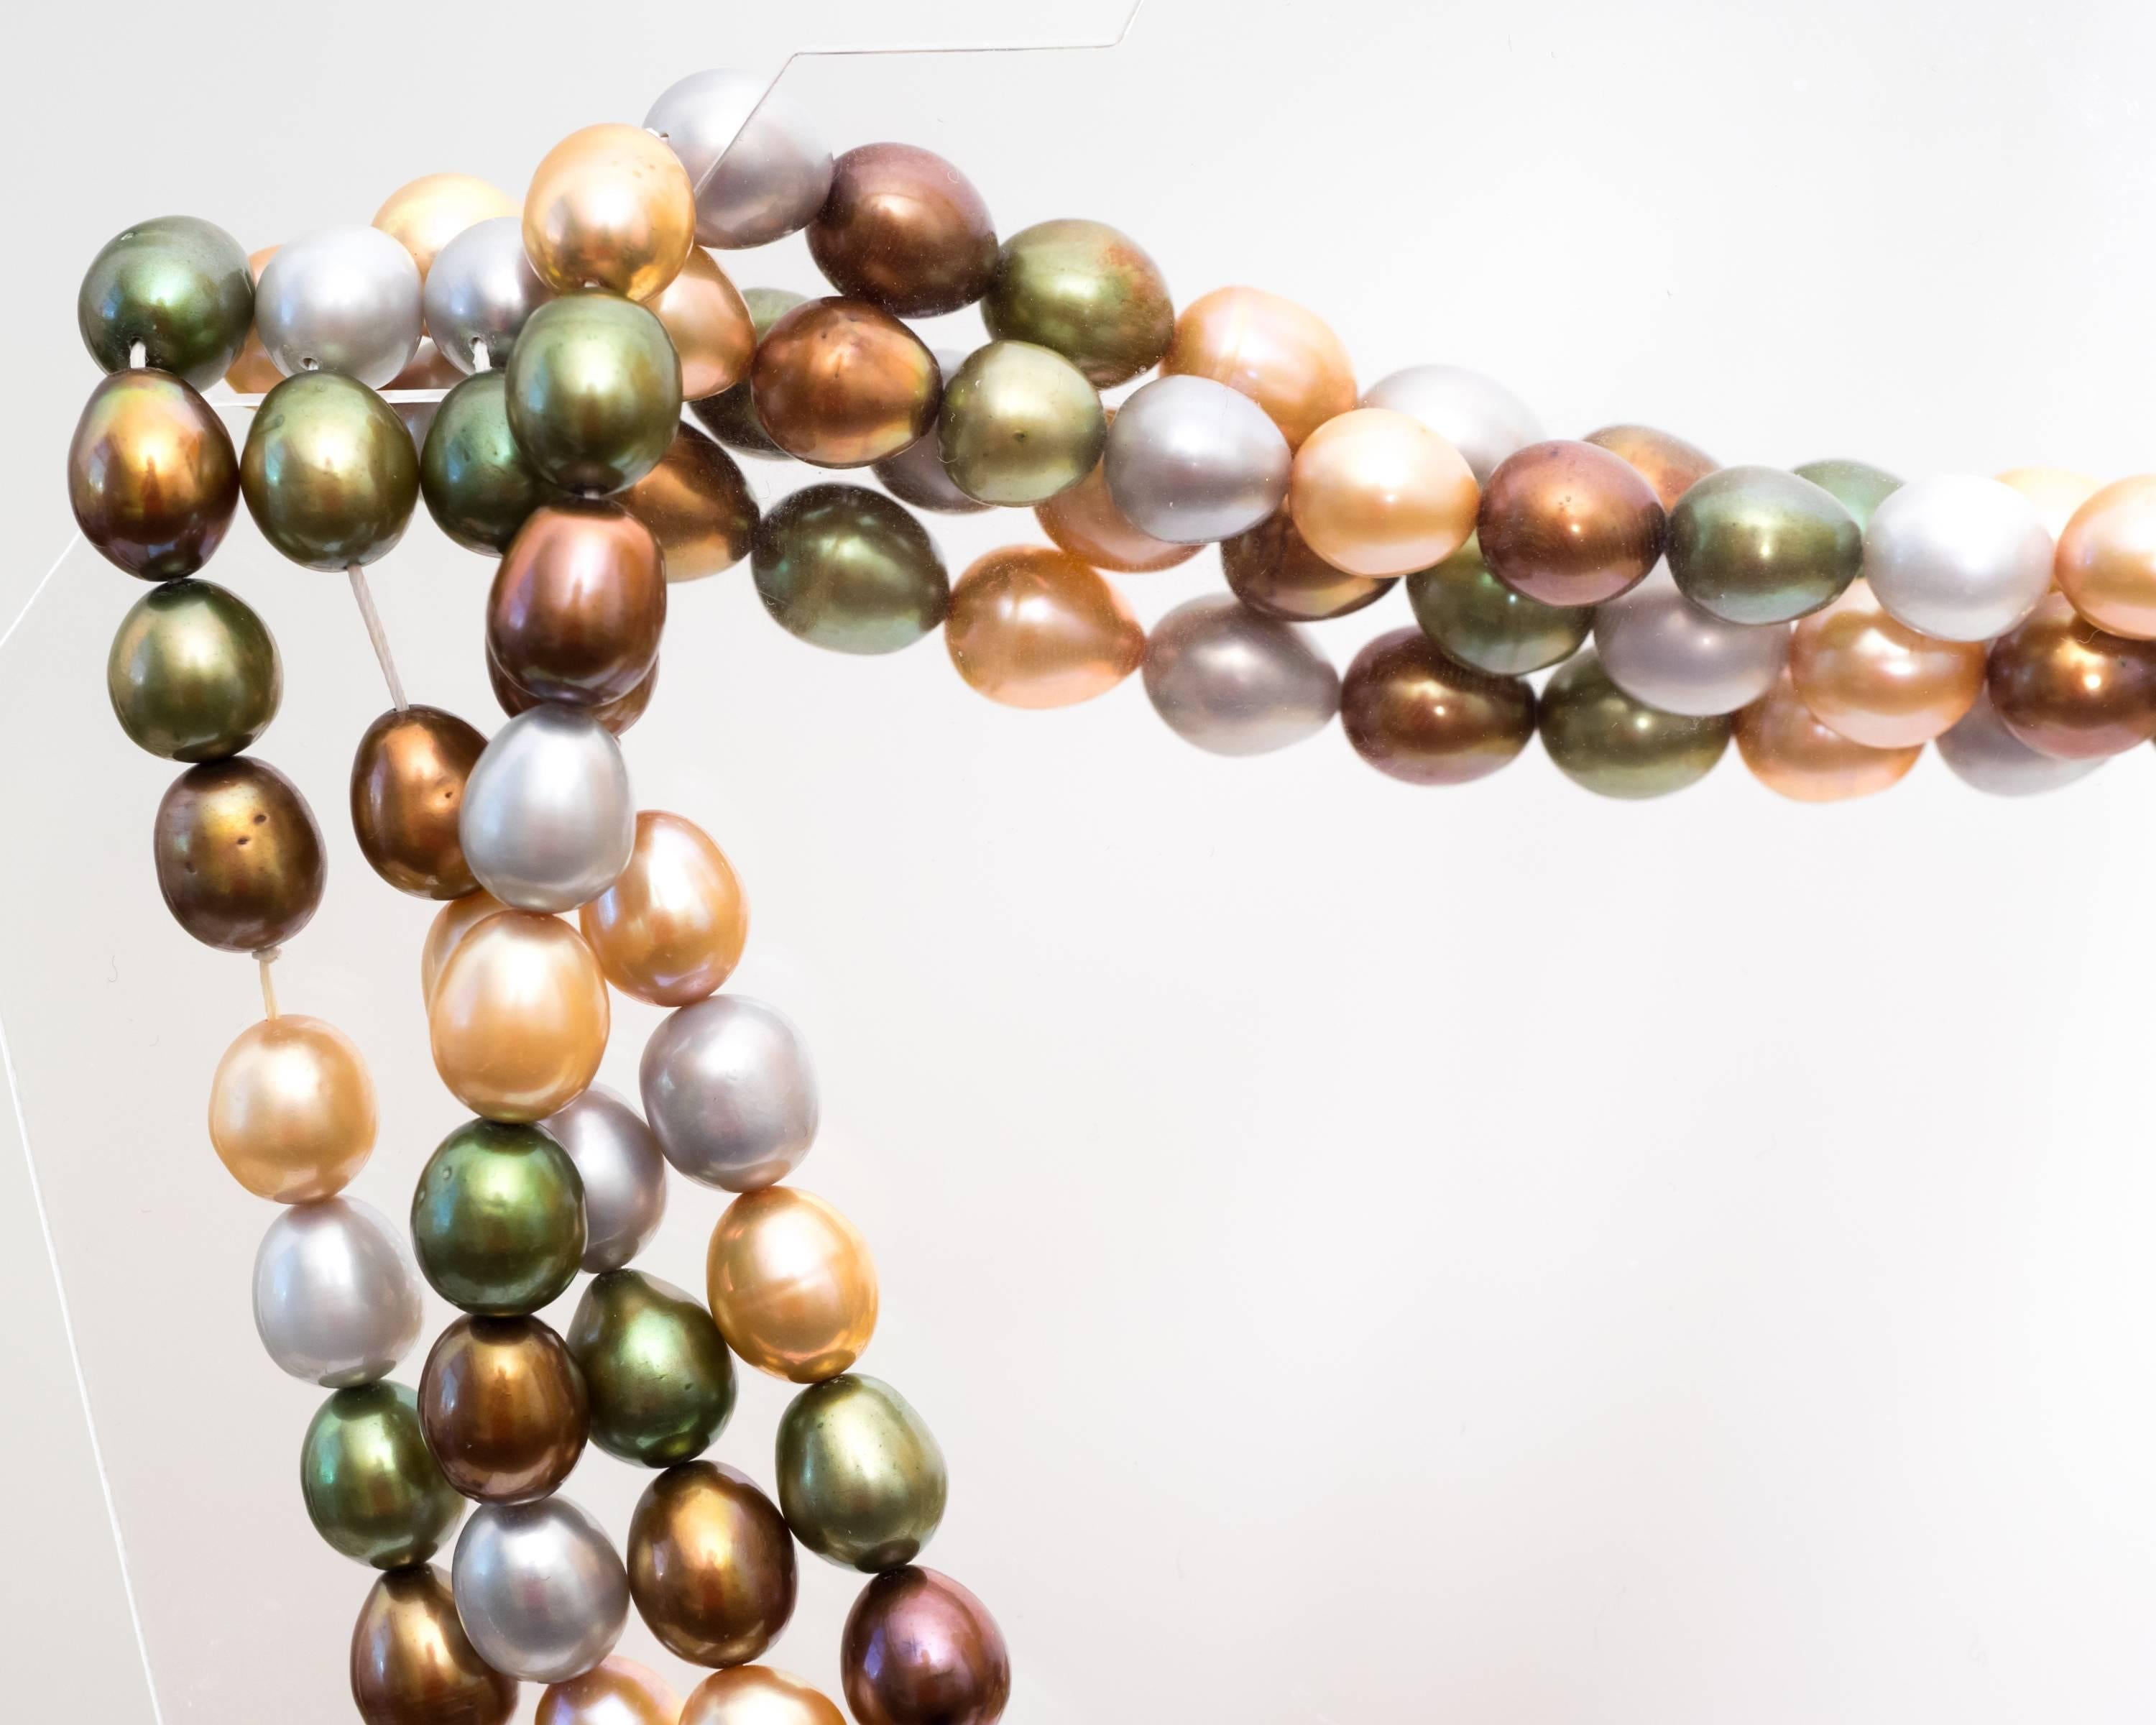 Multicolor Natürliche Südsee gefärbte Perlen
Dieser lange Strang von zweiundsiebzig Zentimetern macht es einfach, diese Kette zu schichten. Ob Sie einen einzelnen langen Strang, eine doppelte oder dreifache Lage üppiger Perlen wünschen. Die